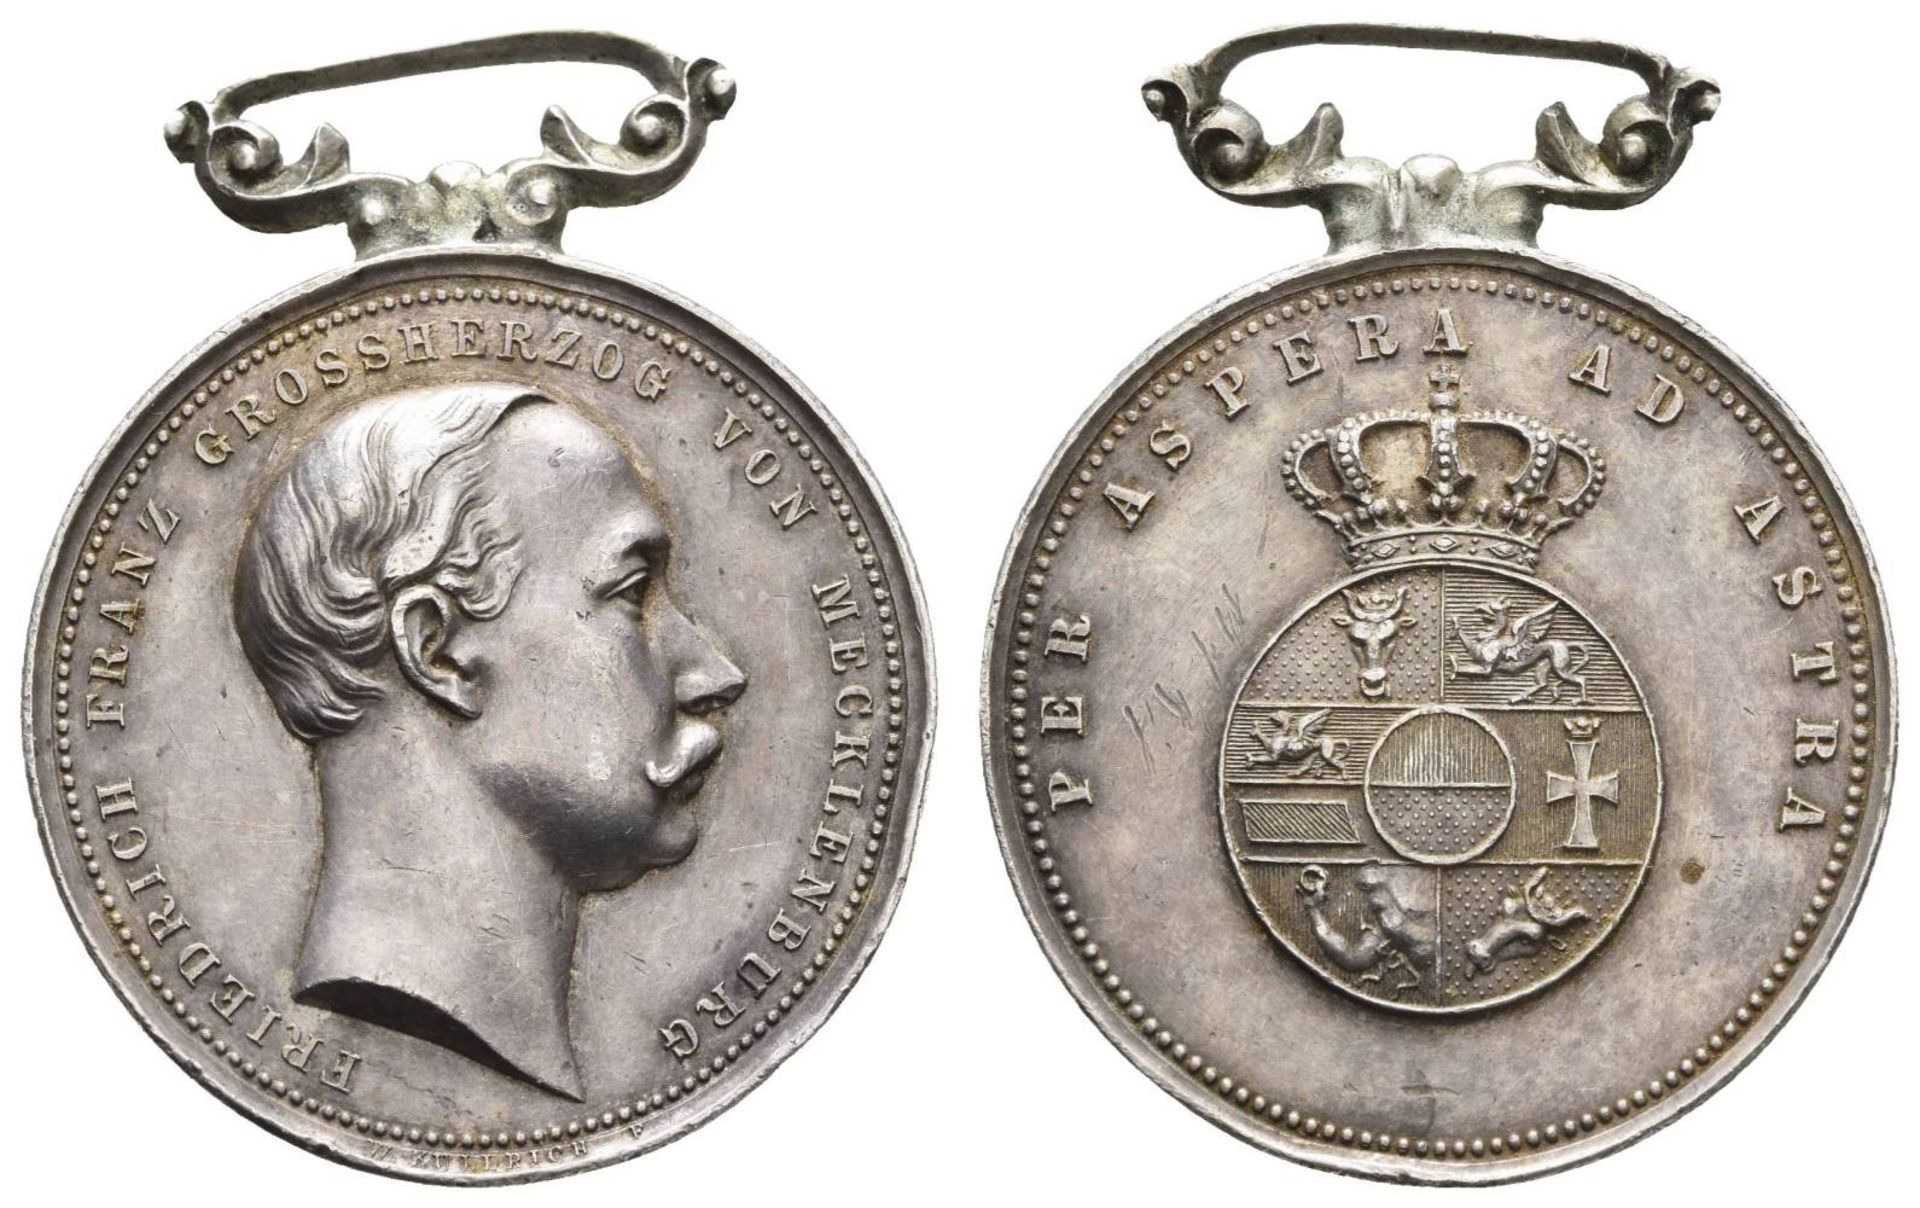 Mecklenburg-Schwerin, silberne Medaille, Friedrich Franz III., für Zivilpersonen,1885-1918, OEK